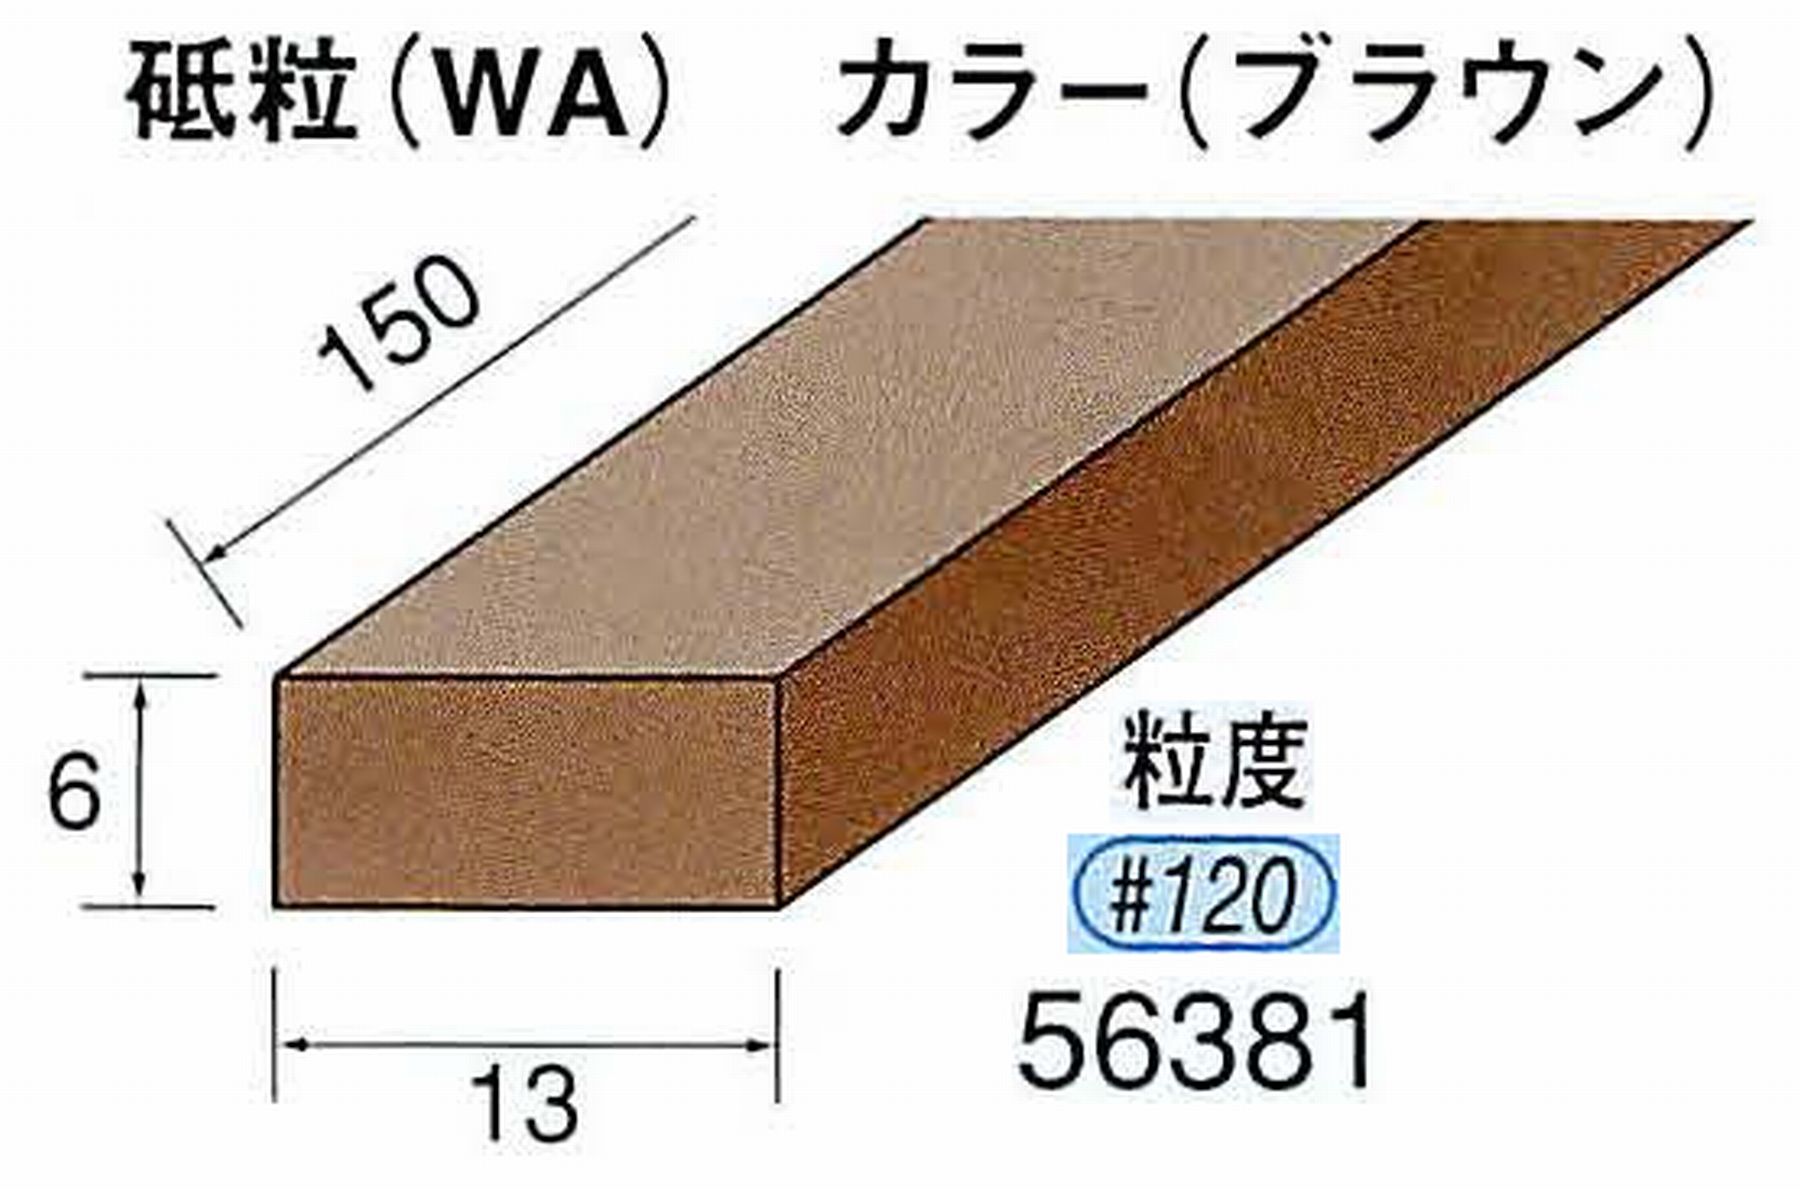 ナカニシ/NAKANISHI スティック砥石 ブラウン・フィニッシュシリーズ 砥粒(WA) 56381